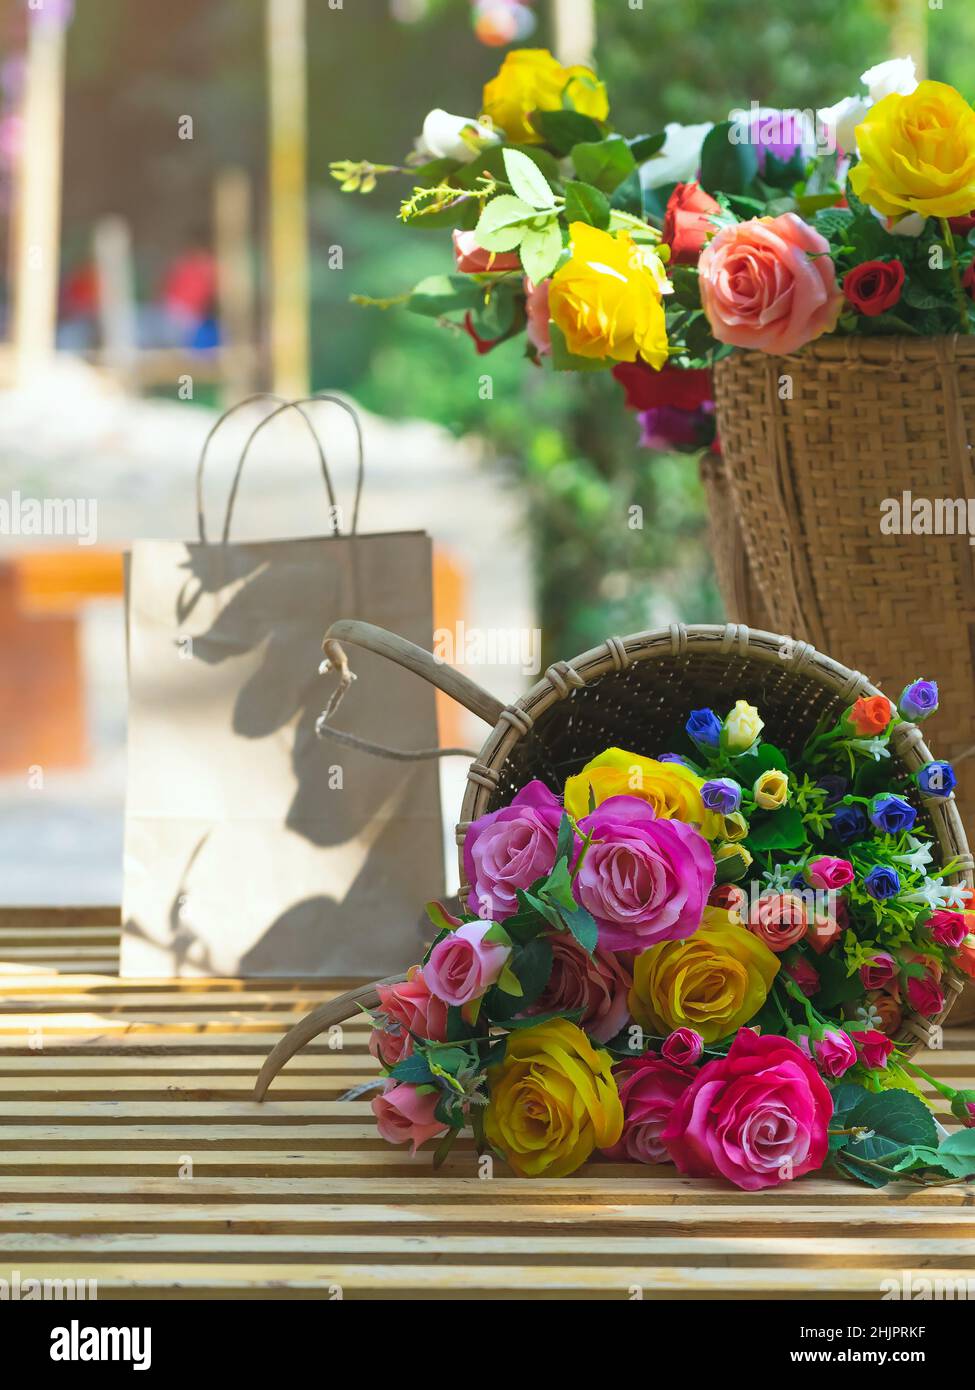 Hermoso ramo de rosas flor artificial en la cesta de mimbre vintage. Las  flores artificiales multicolor hechas de tela o tela parecen flores reales.  RET Fotografía de stock - Alamy